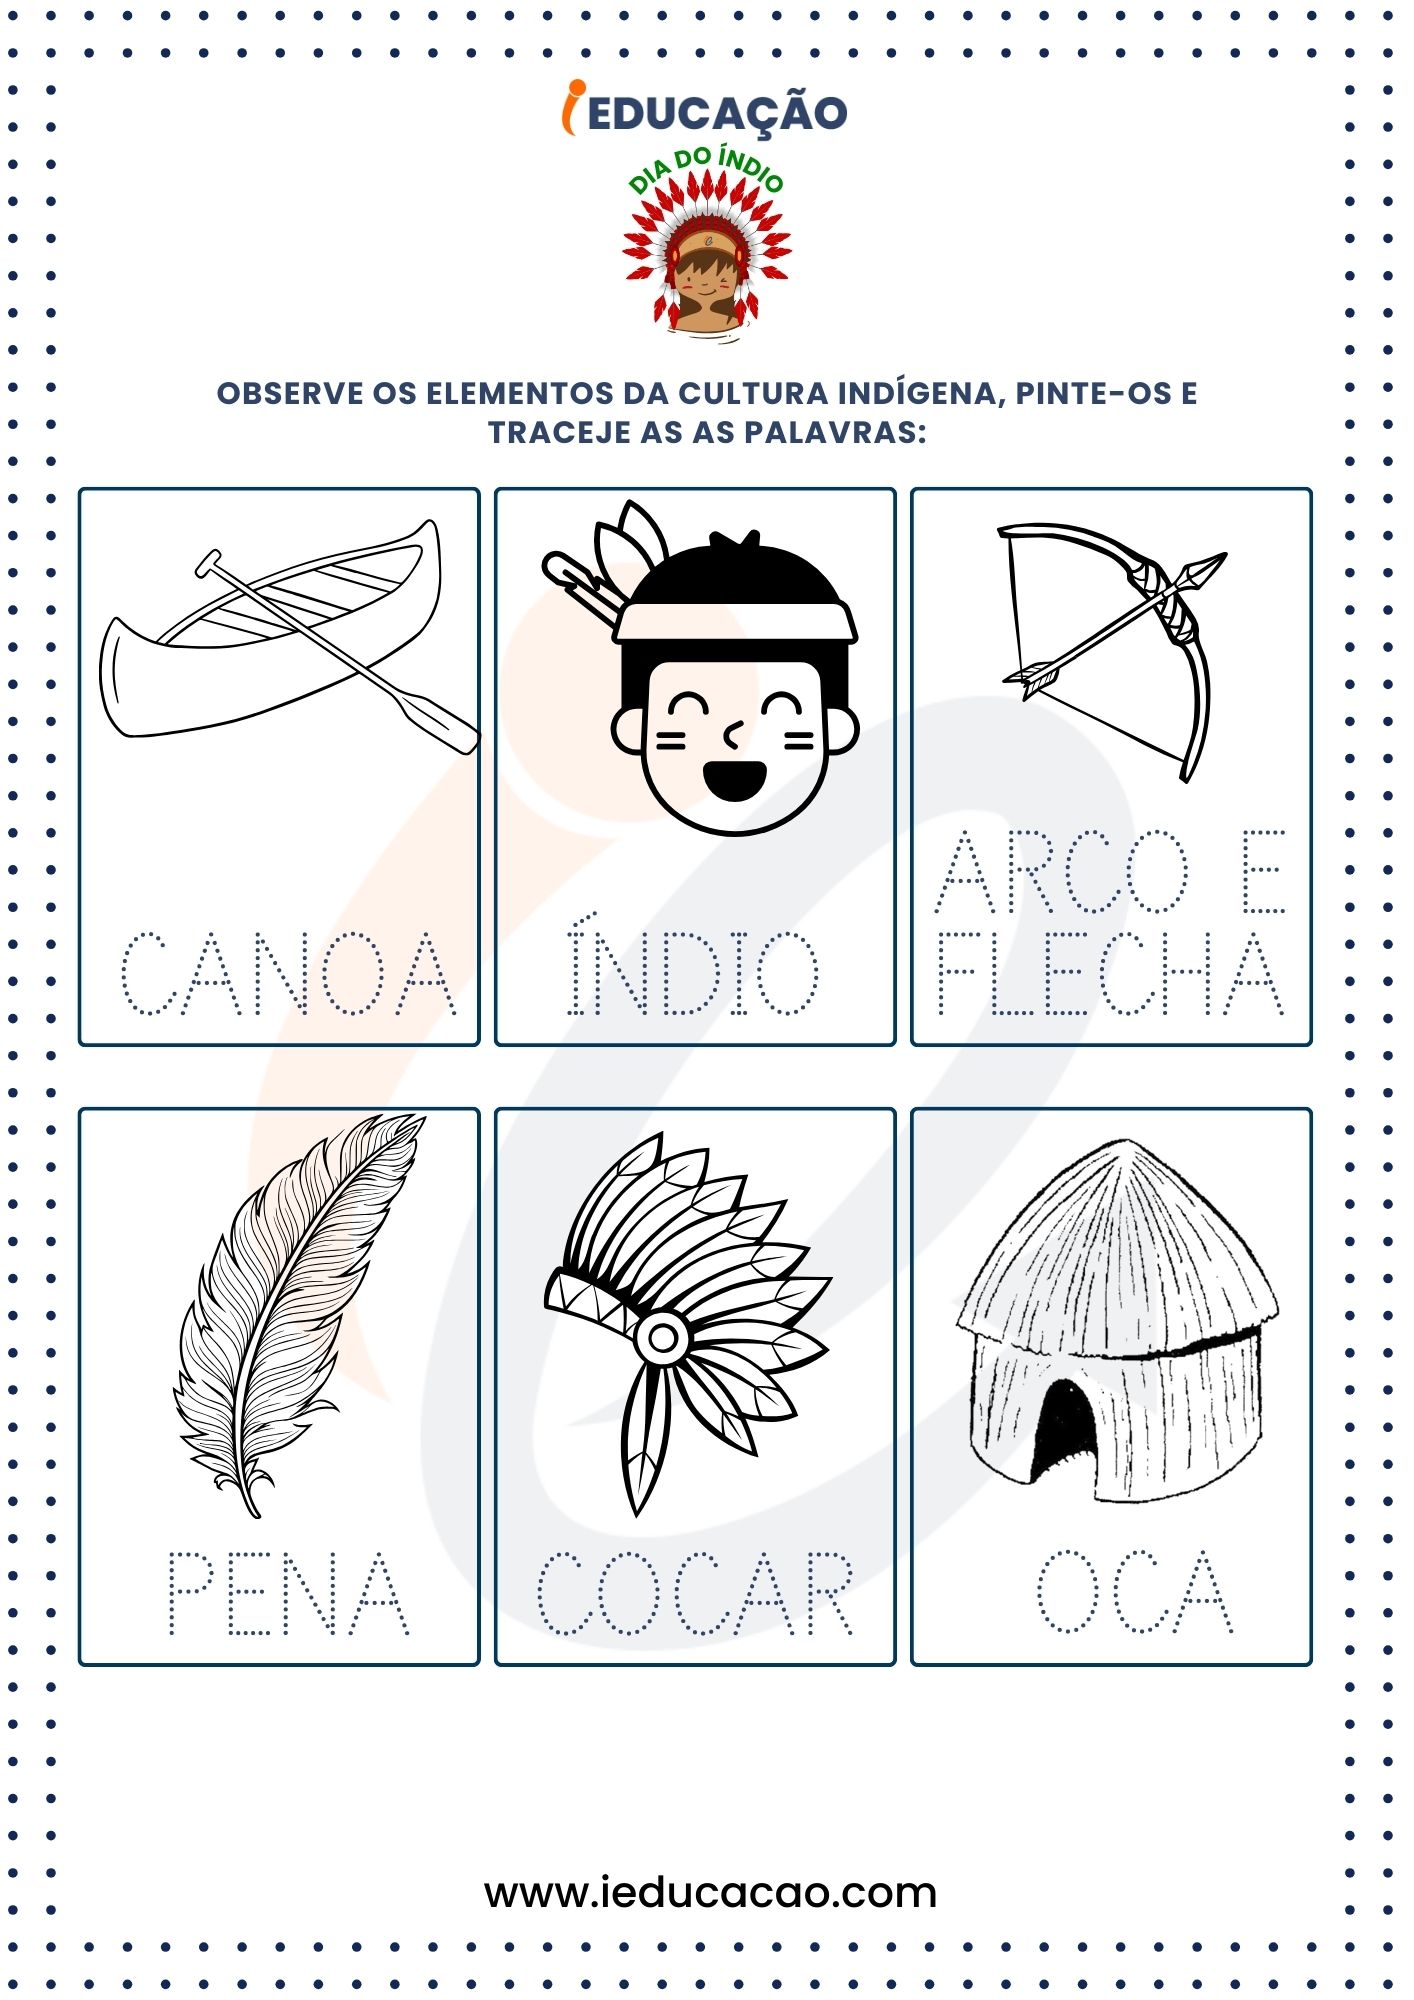 Atividades para o Dia do Índio - Pré 1 (4-5 anos) - Atividades de Palavras Tracejadas com Elementos da Cultura Indígena.jpg